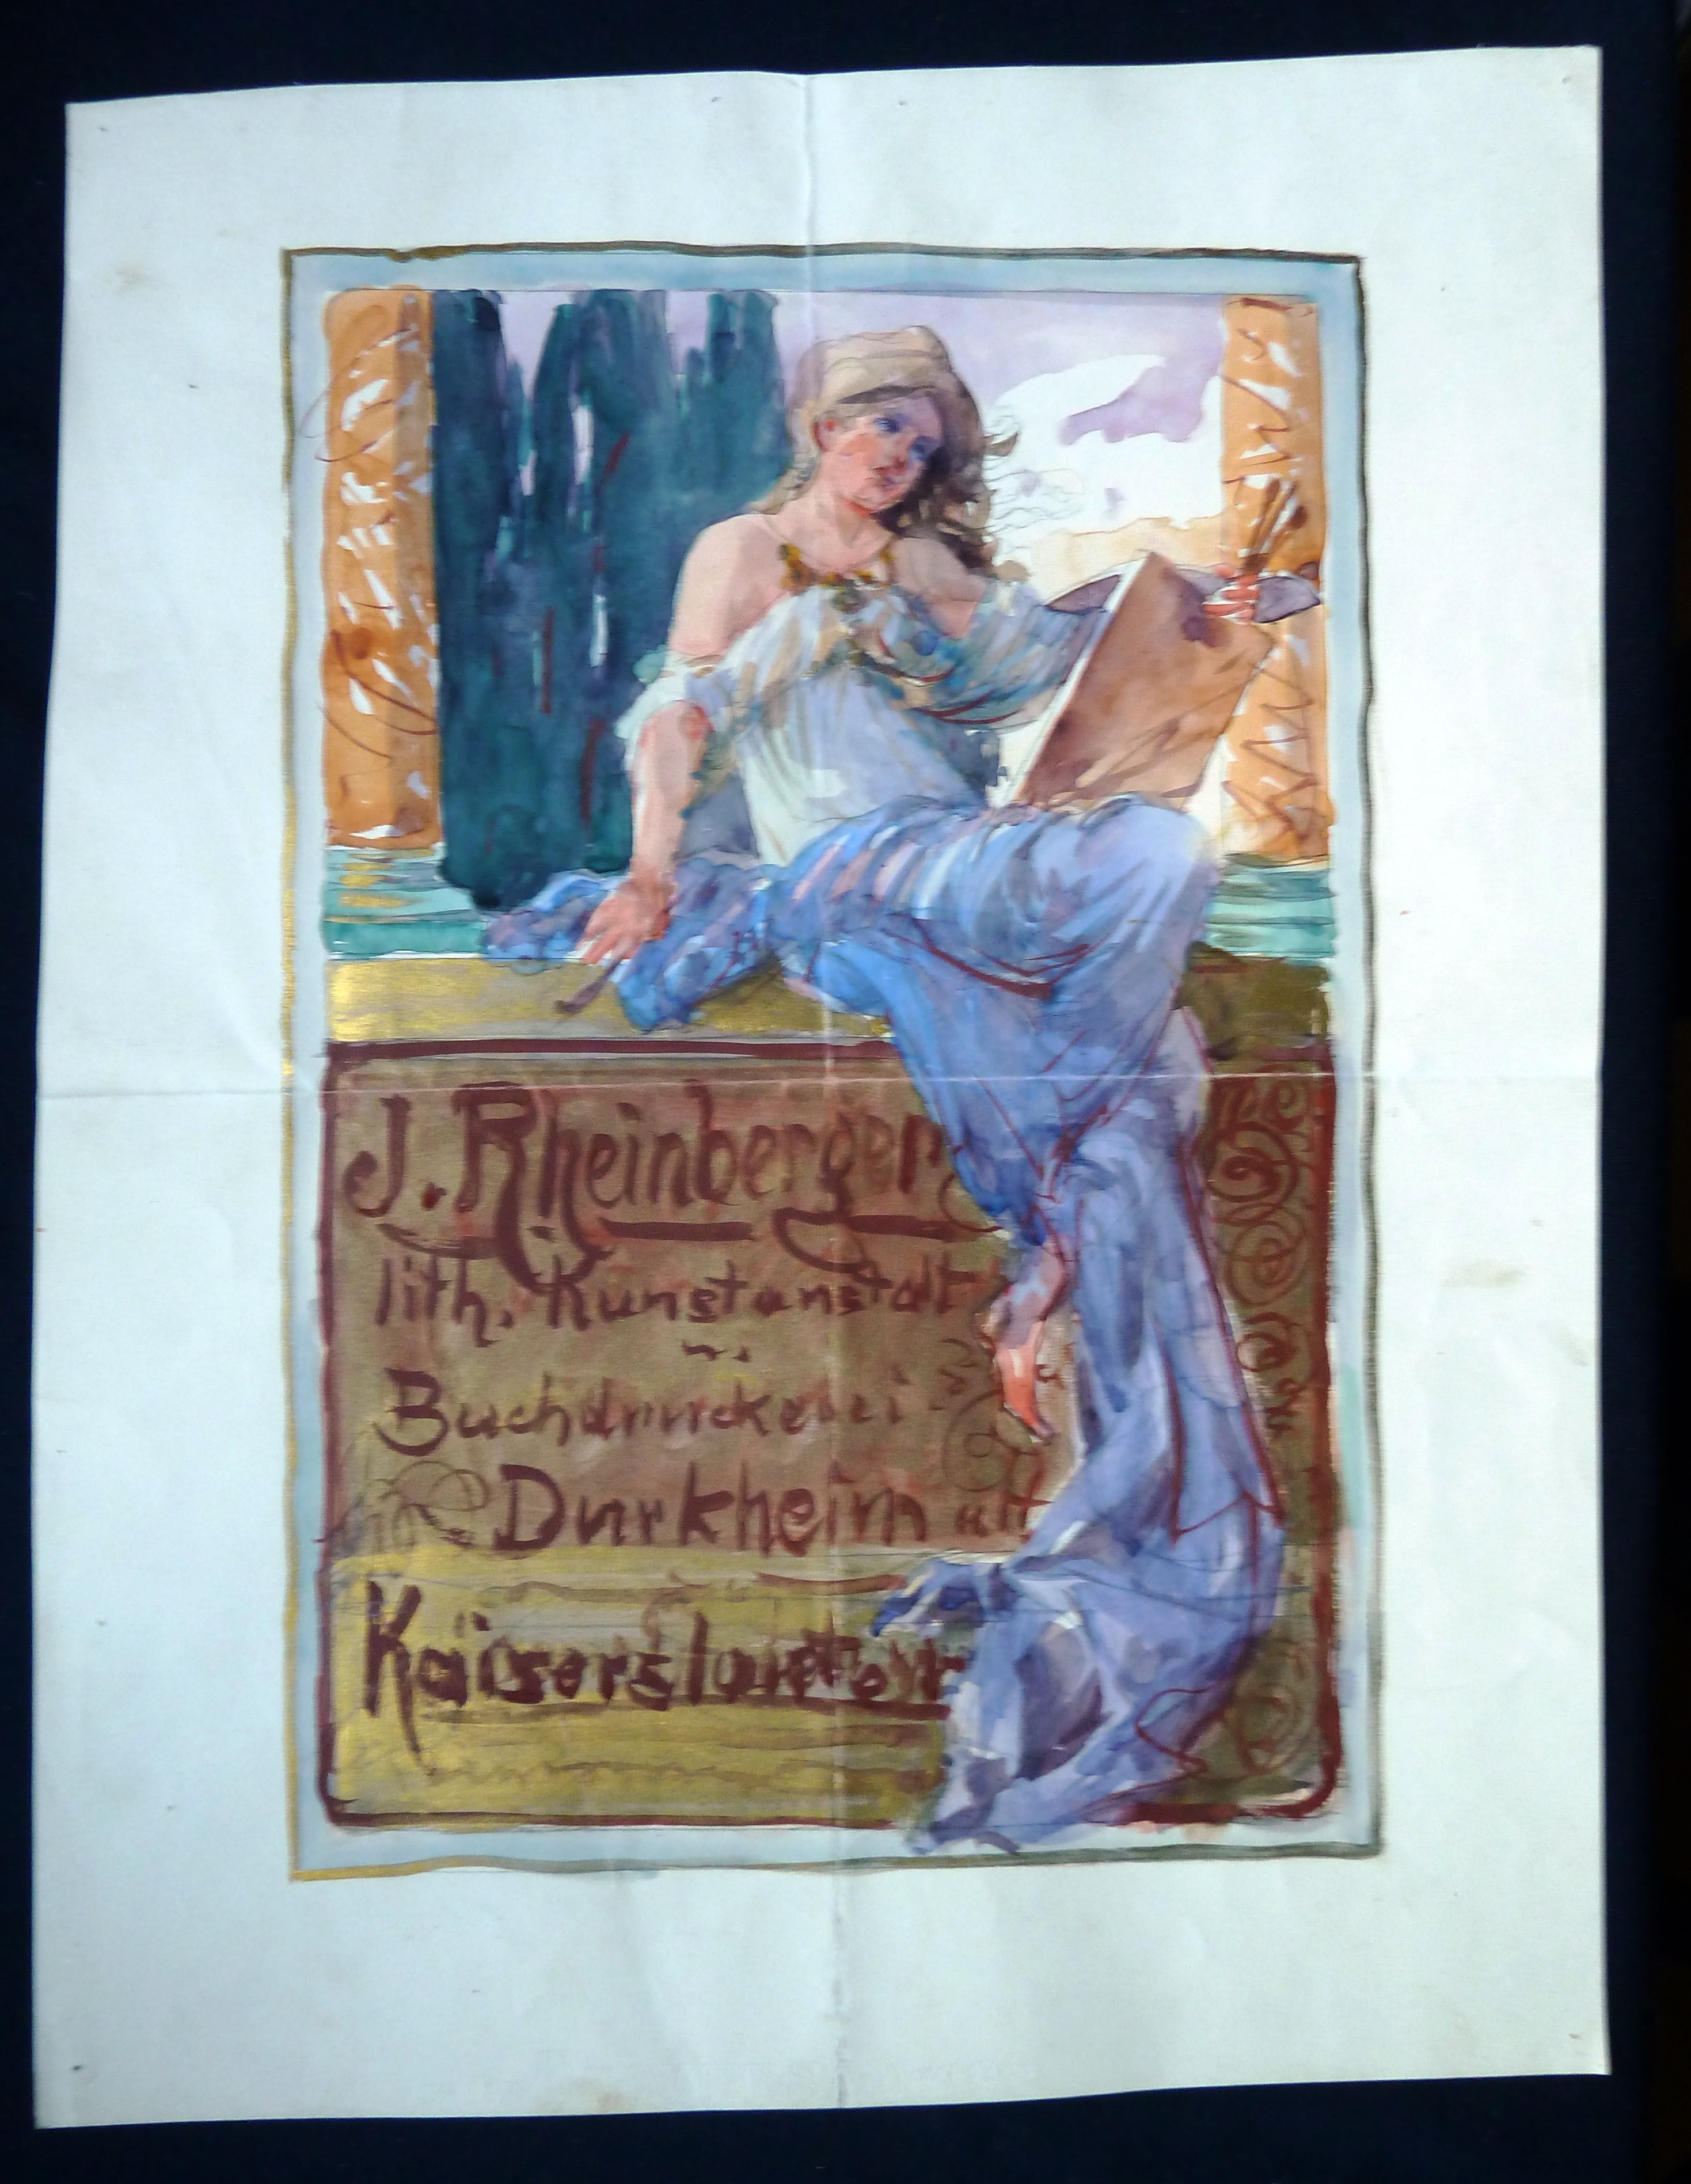 Bild, Farb-Zeichnung, Aquarell: Werbeplakat für J. Rheinberger; Valentin Dirion, Bad Dürkheim, 1900 (Stadtmuseum Bad Dürkheim, Museumsgesellschaft Bad Dürkheim e.V. CC BY-NC-SA)